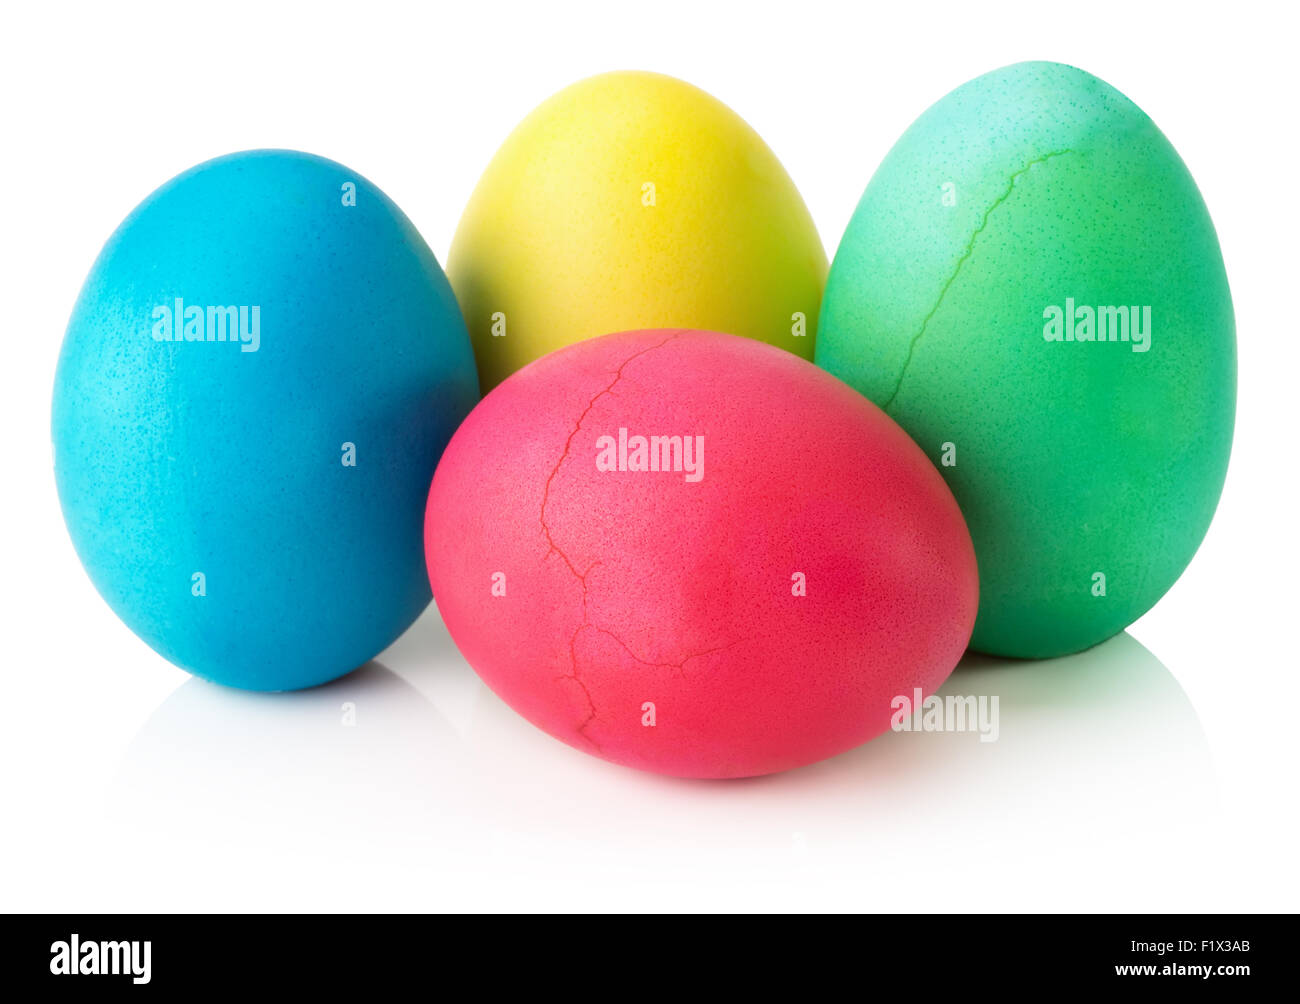 Los huevos de Pascua colorido aislado sobre un fondo blanco. Foto de stock